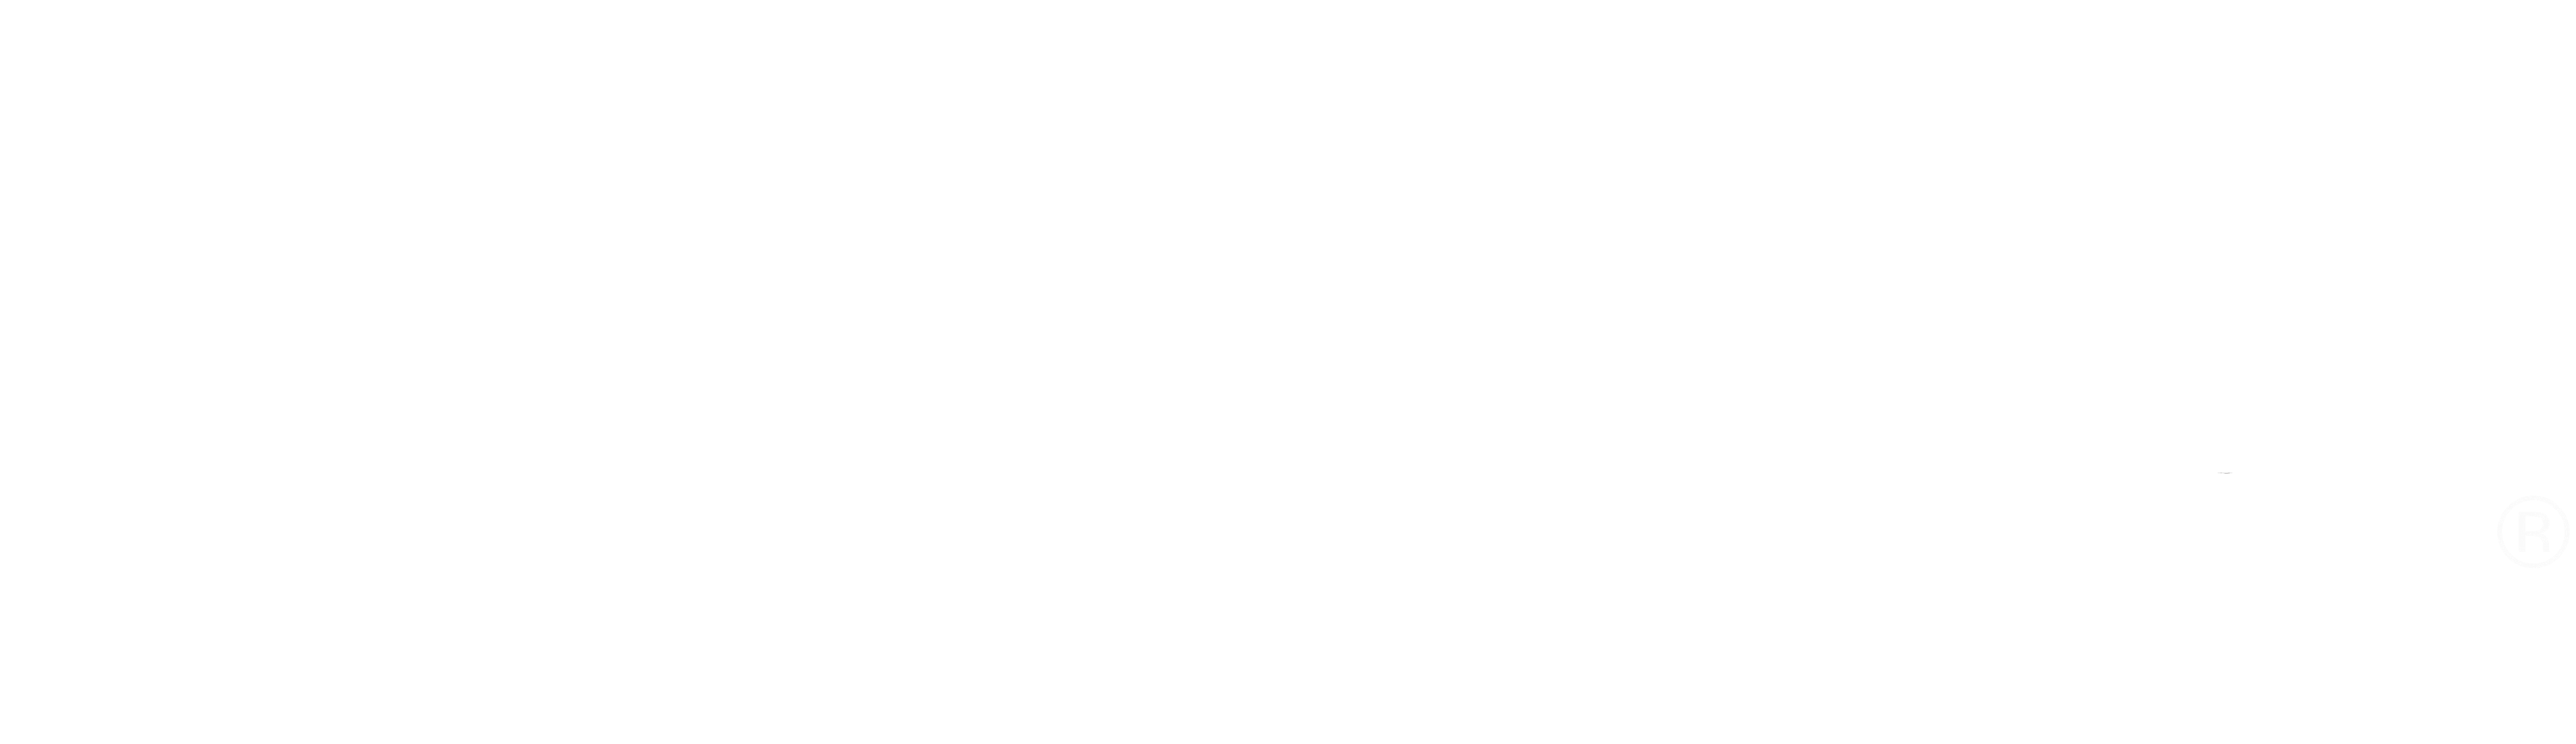 Logo de Tea en la azotea